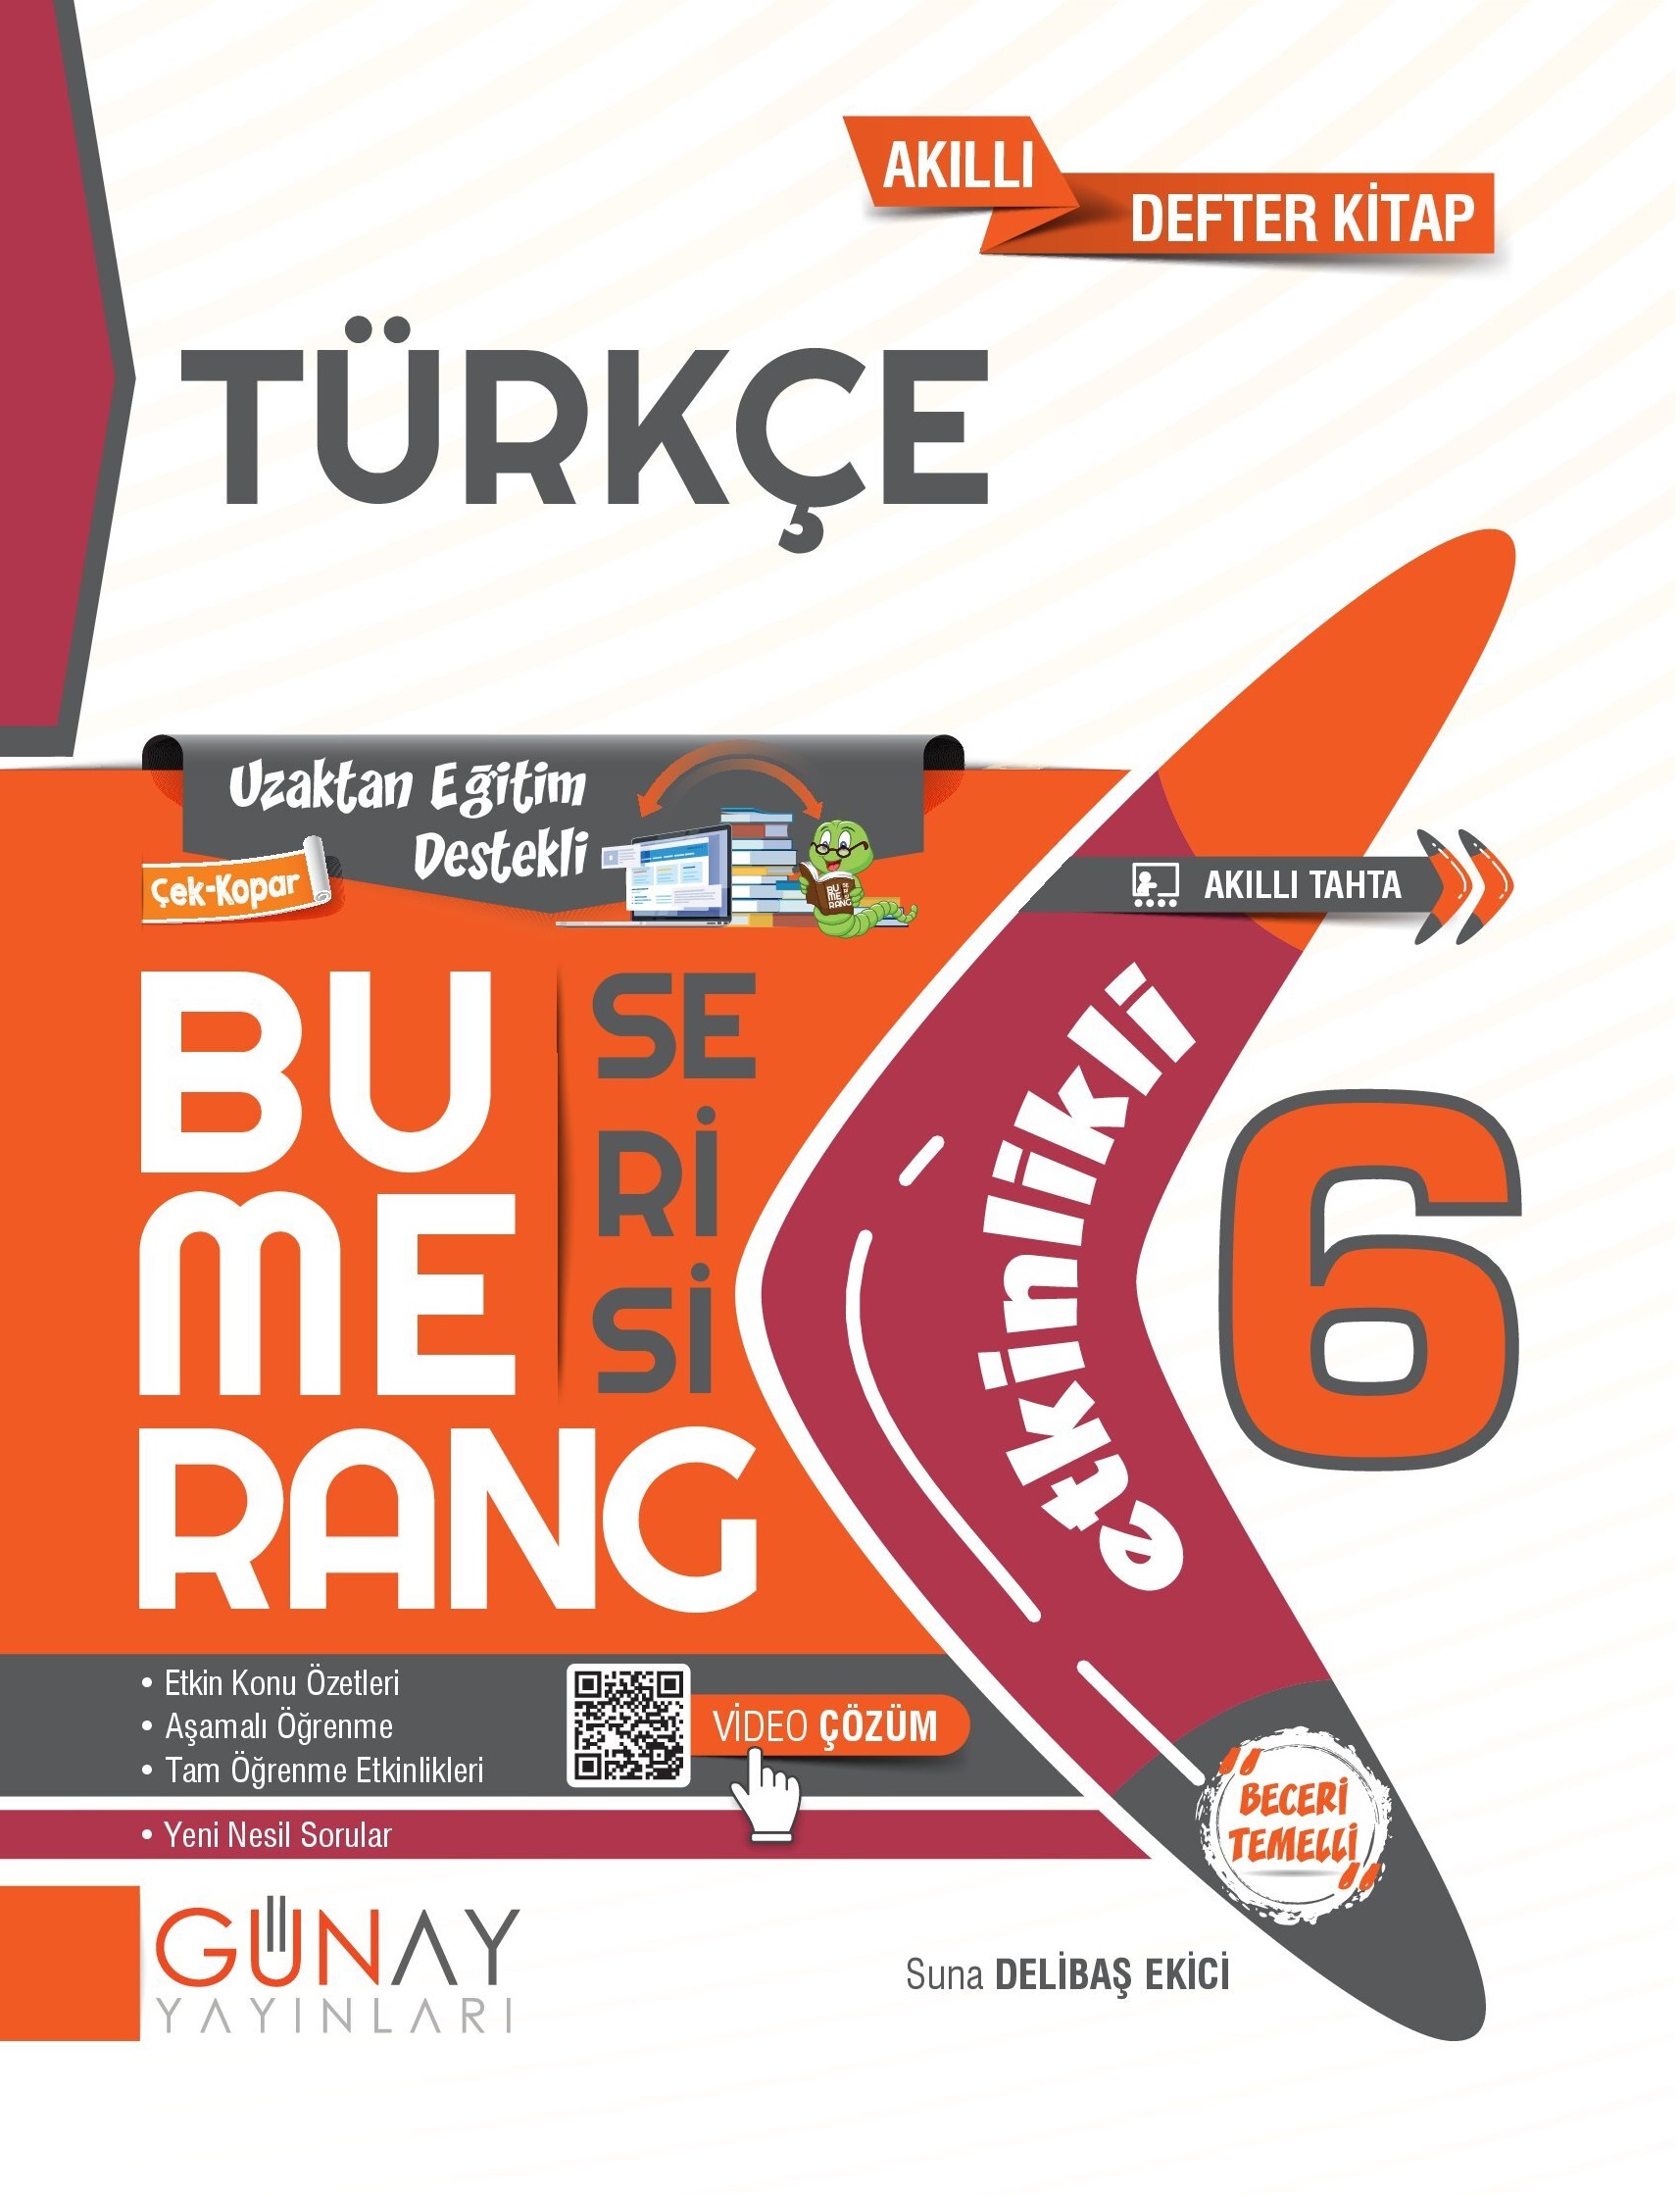 6 Bumerang Turkce